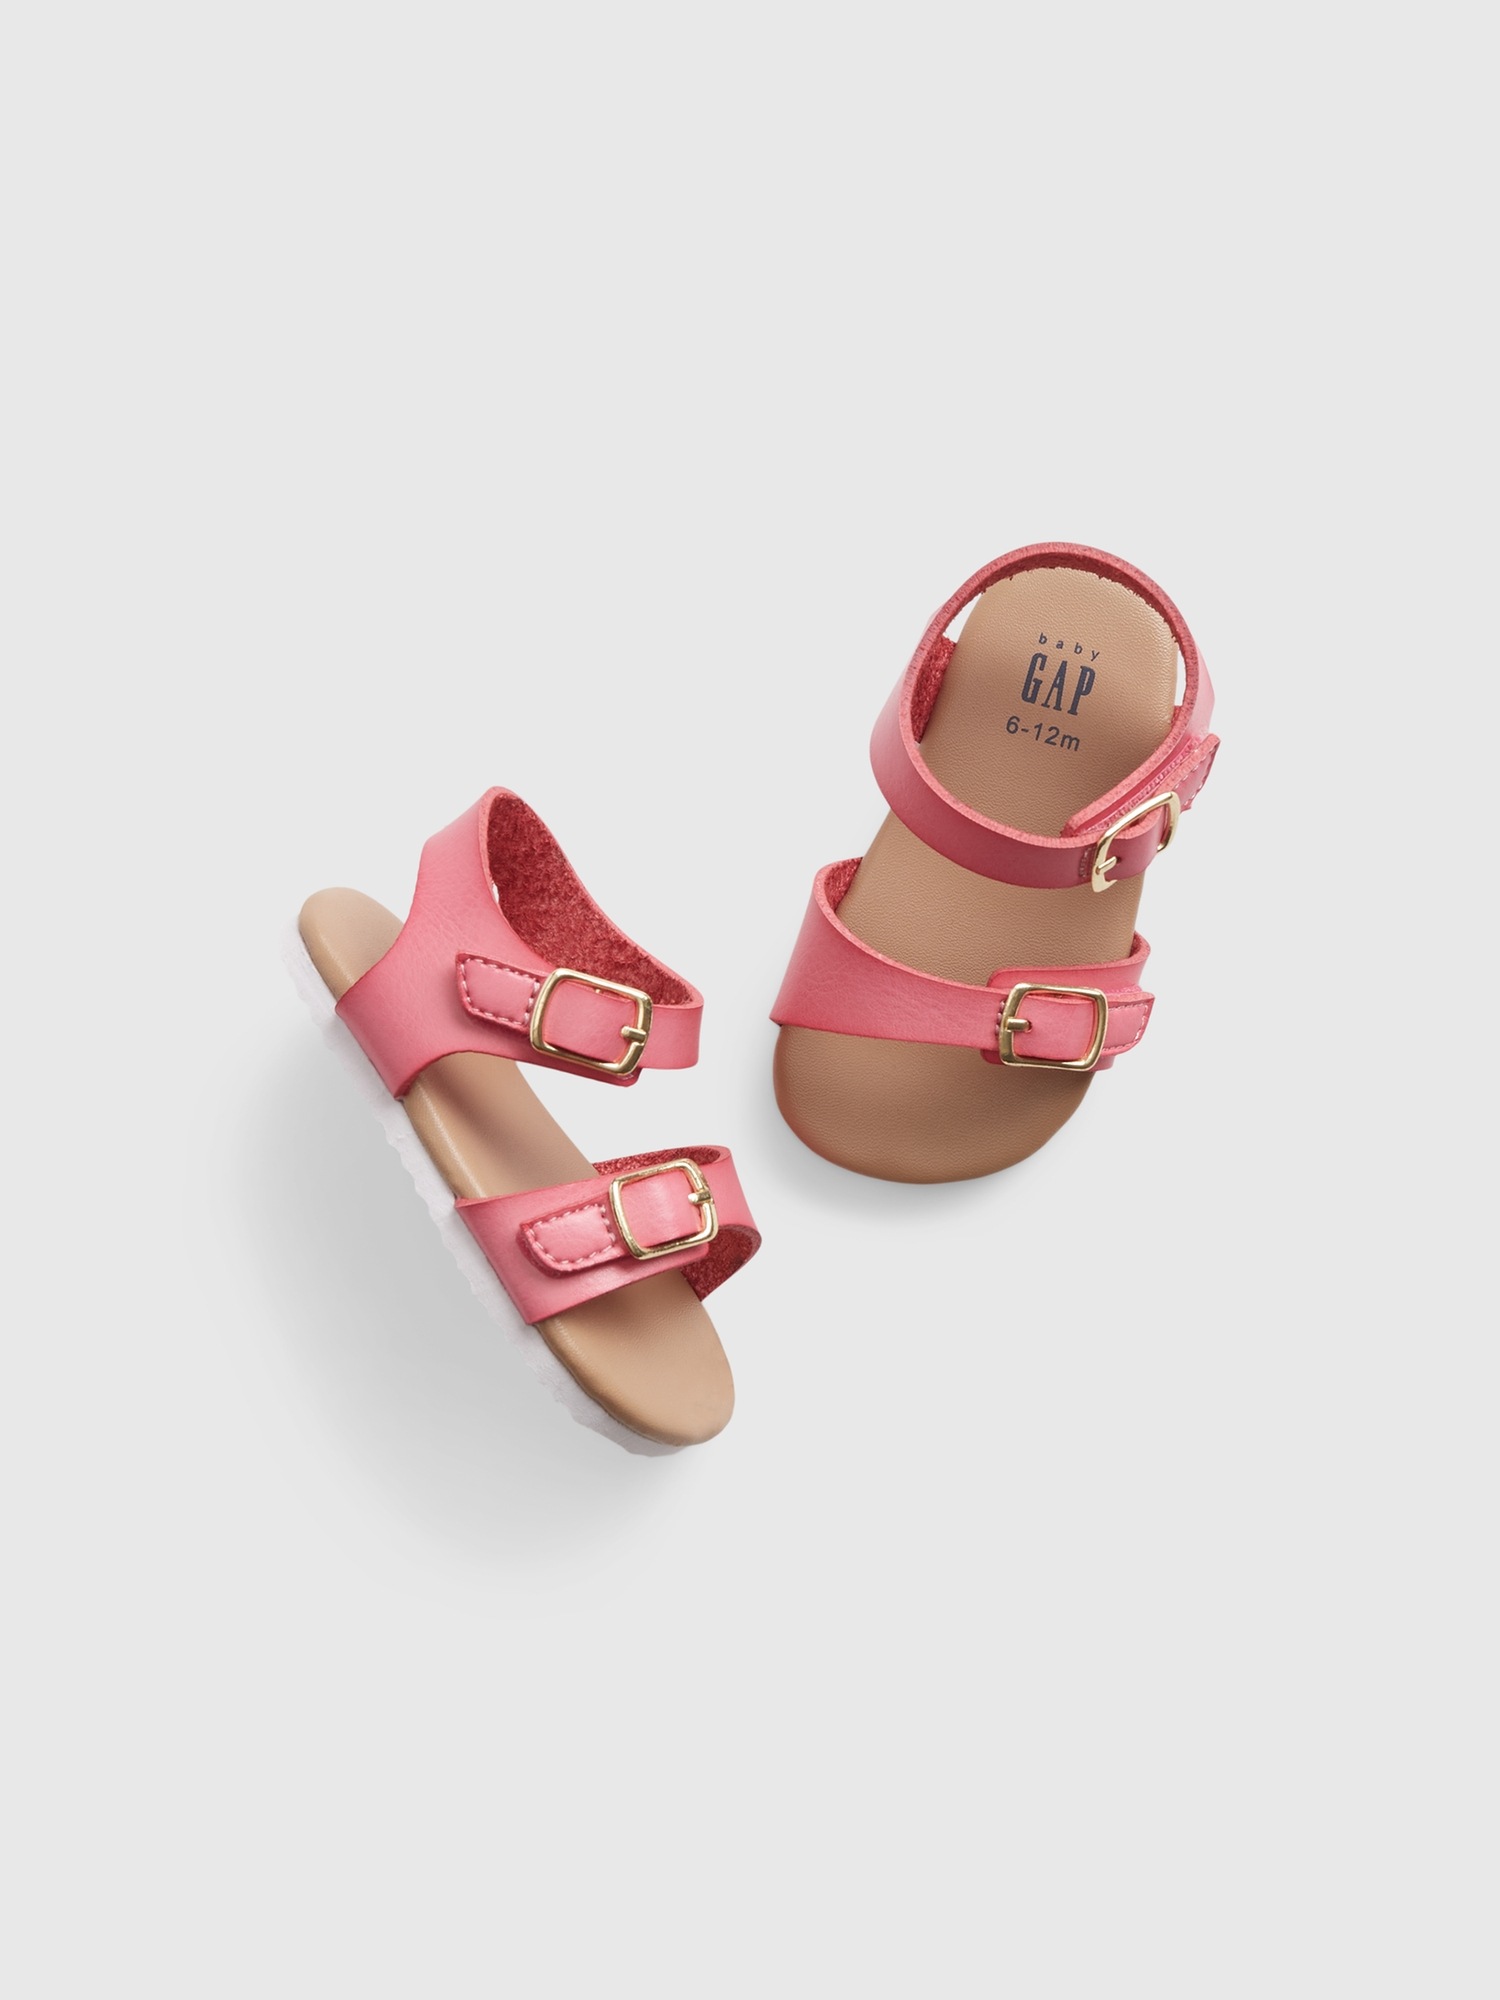 Gap Baby Buckle Sandals In Shocking Pink